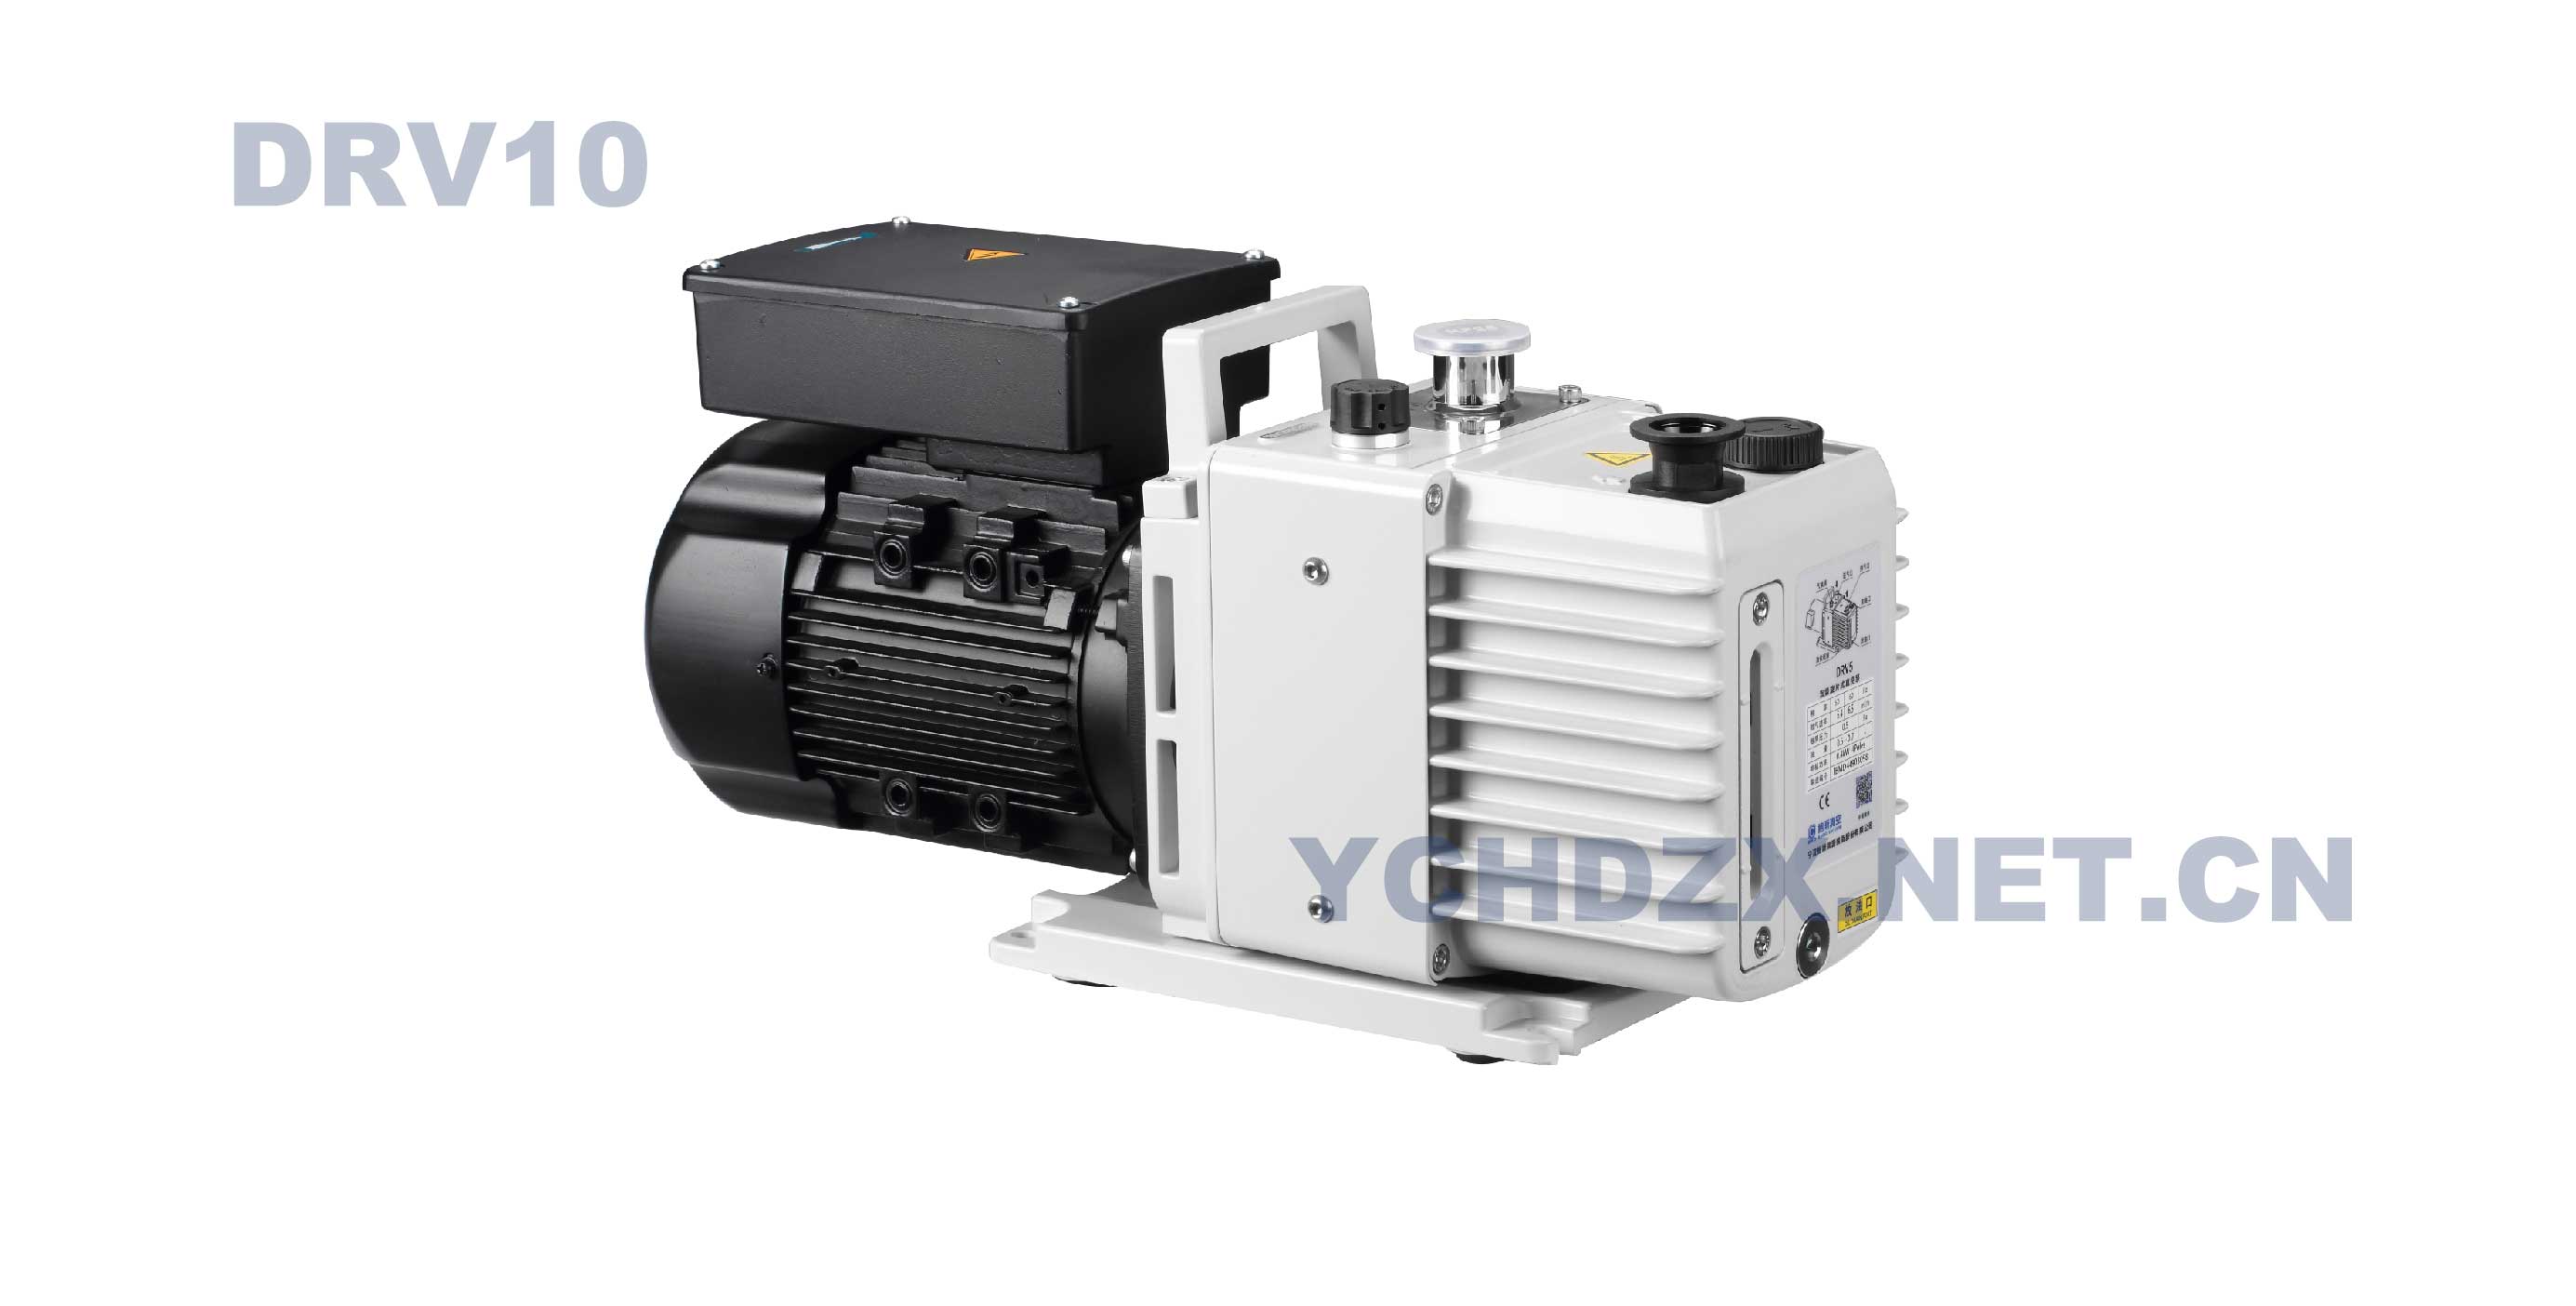 鲍斯DRV10单相油润滑真空泵紧凑型低噪音表面粉末涂料颜色白